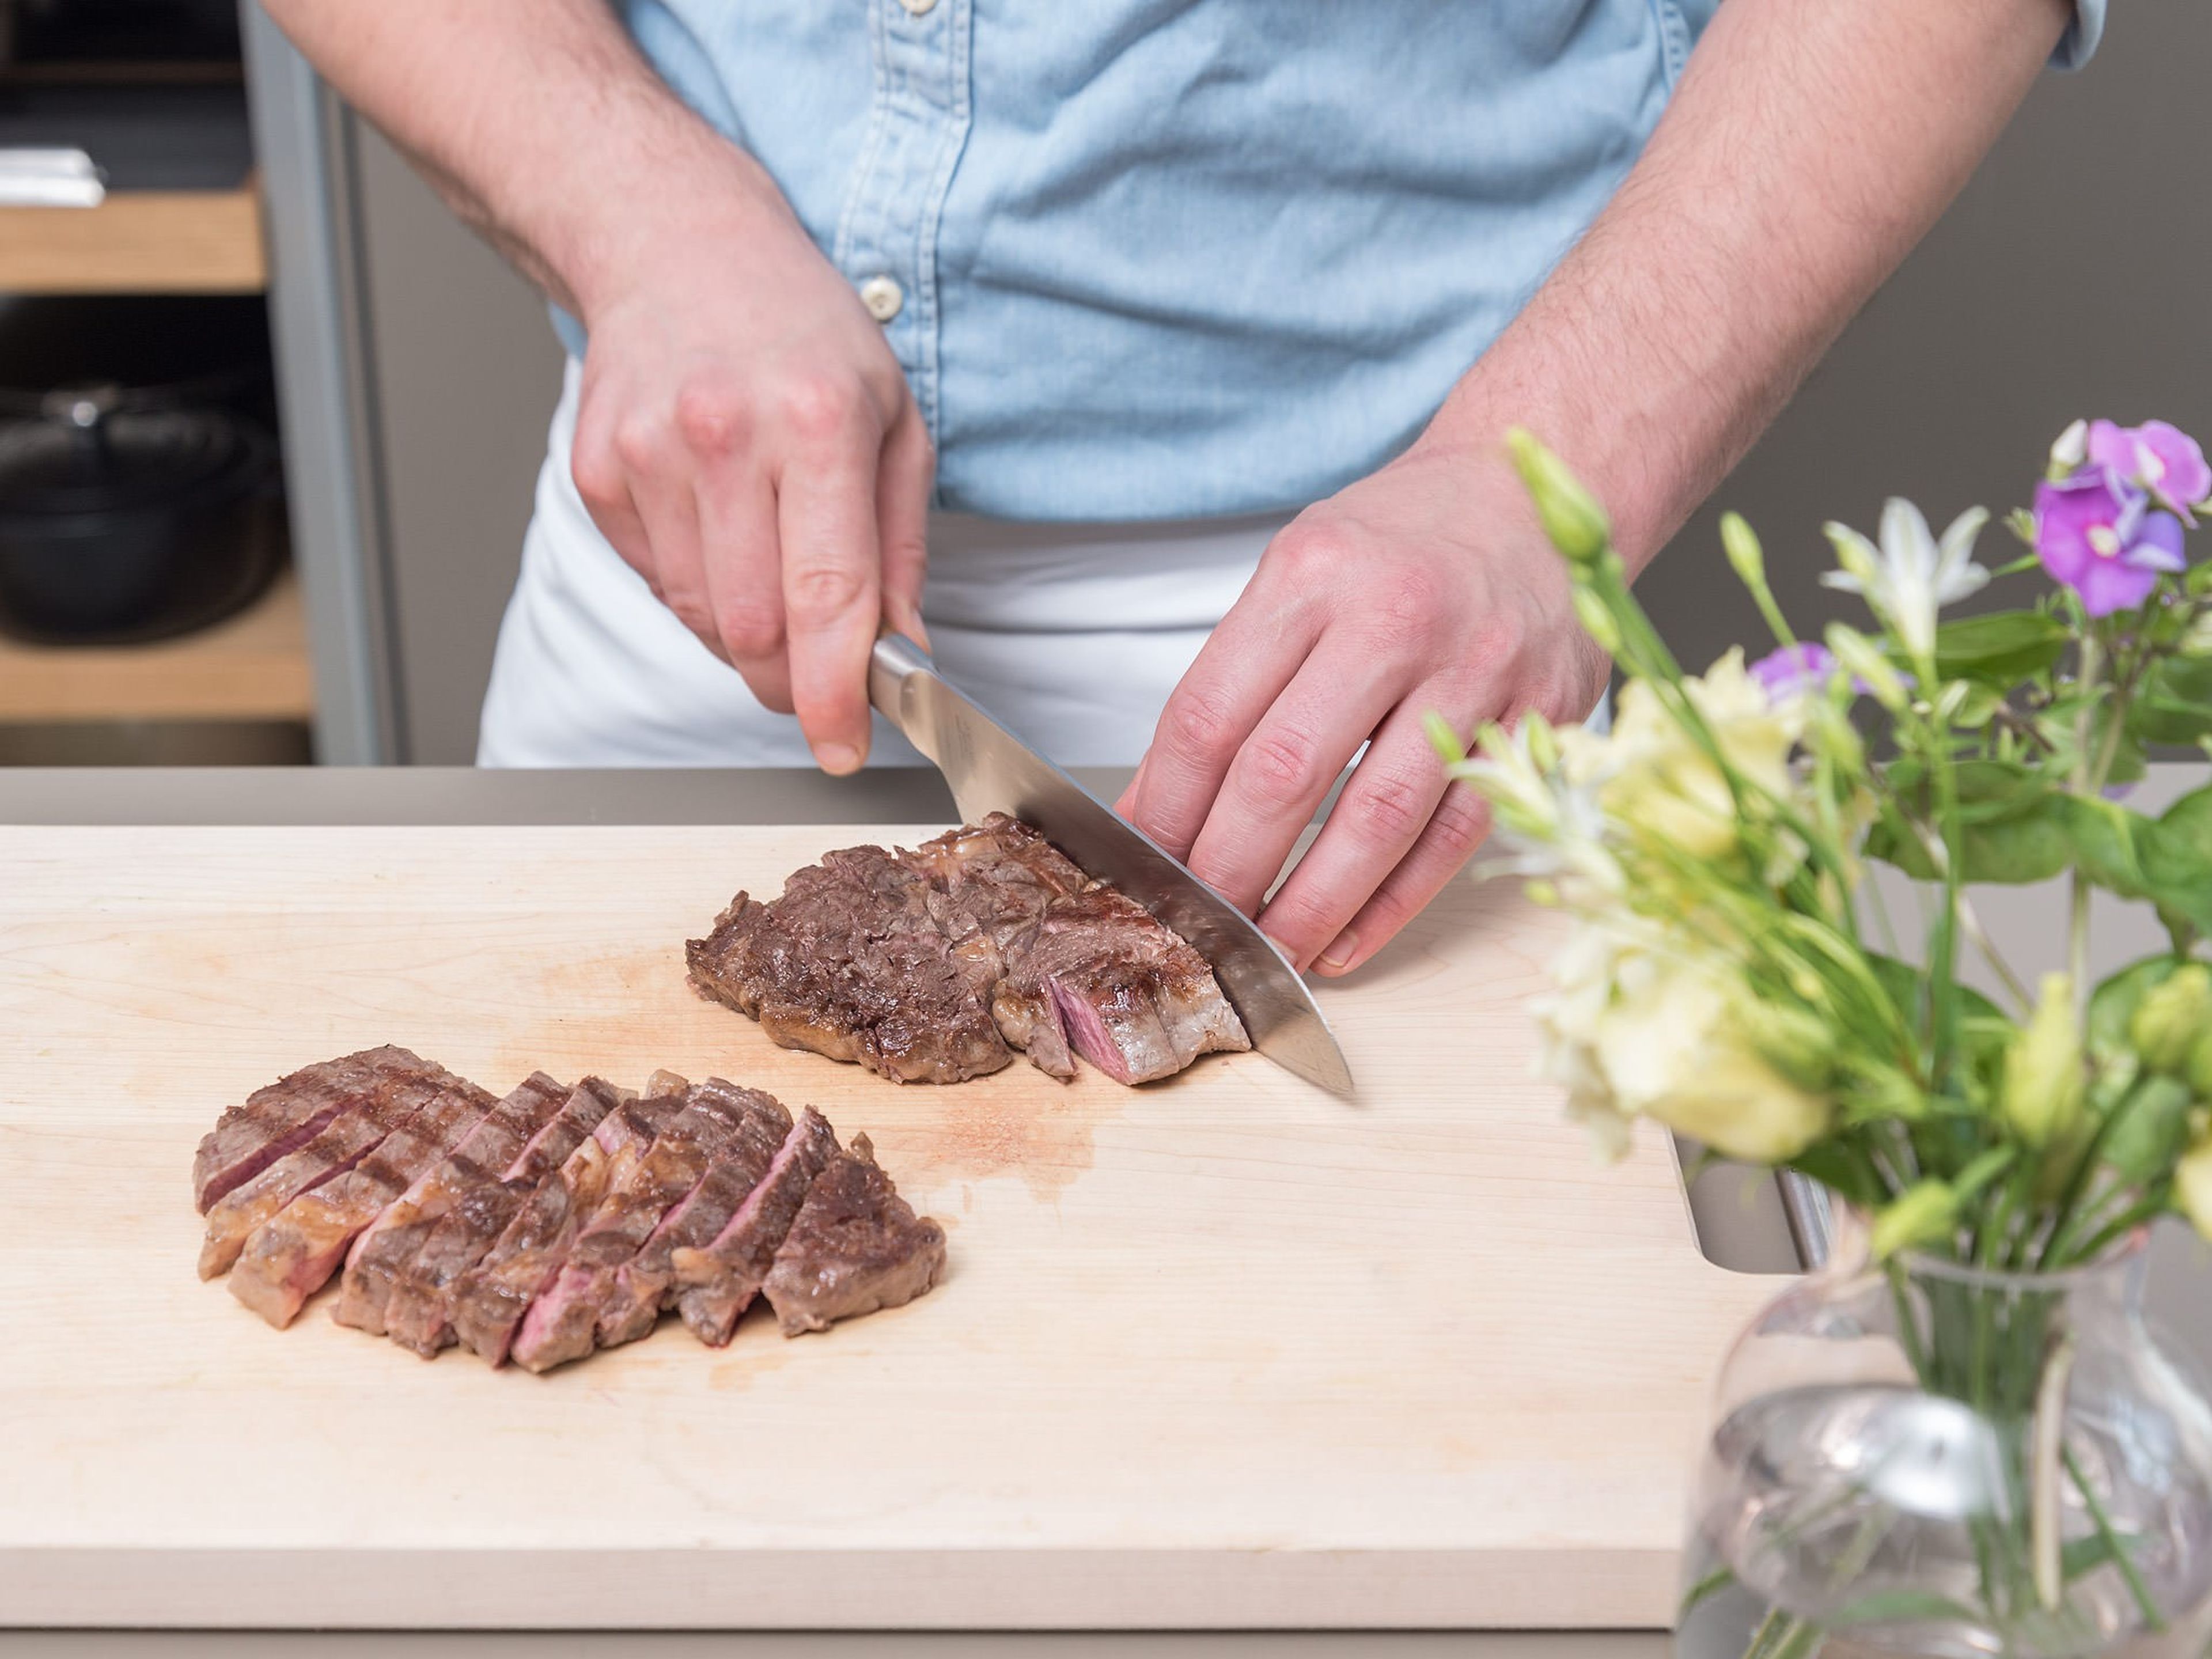 Steaks aus dem Backofen nehmen, kurz abkühlen lassen und ca. 3-5 Min. in Alufolie verpacken. Anschließend in Scheiben schneiden. Mit Ofenkartoffeln und Pico de gallo servieren und genießen!